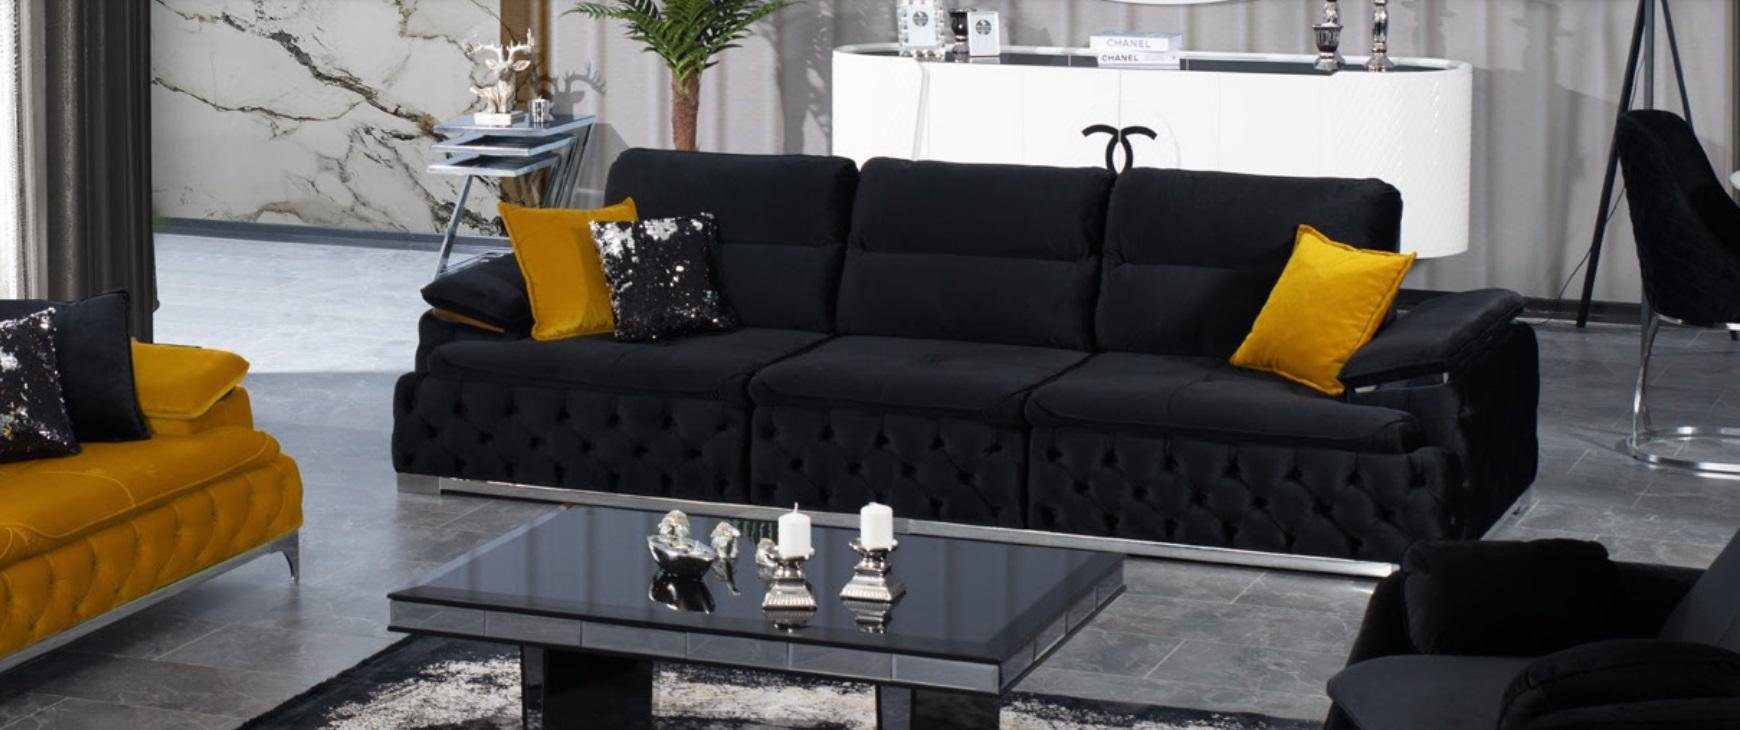 JVmoebel Sofa Italienischer Stil Sofa Polsterung Couch 4 Sitzer Sofas Möbel Couchen